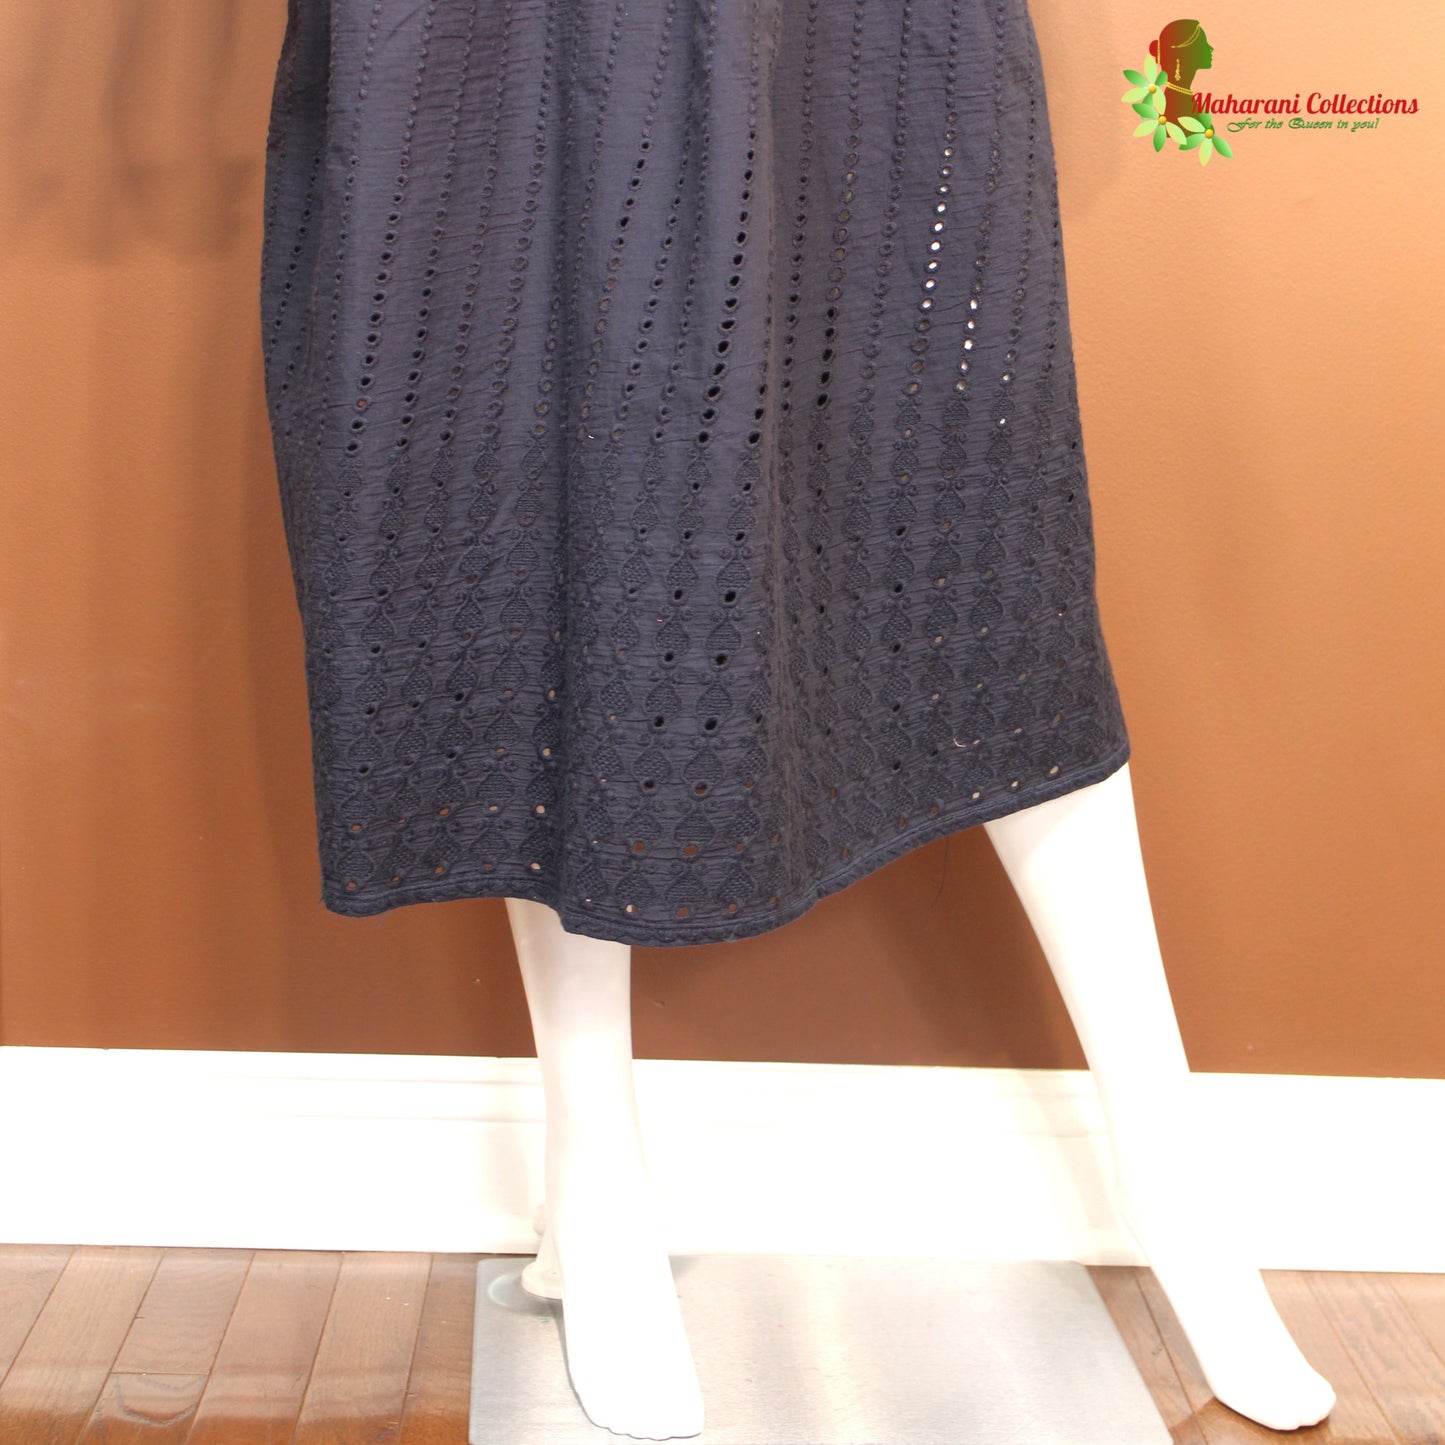 Maharani's Long Dress - Pure Cotton - Black (S)